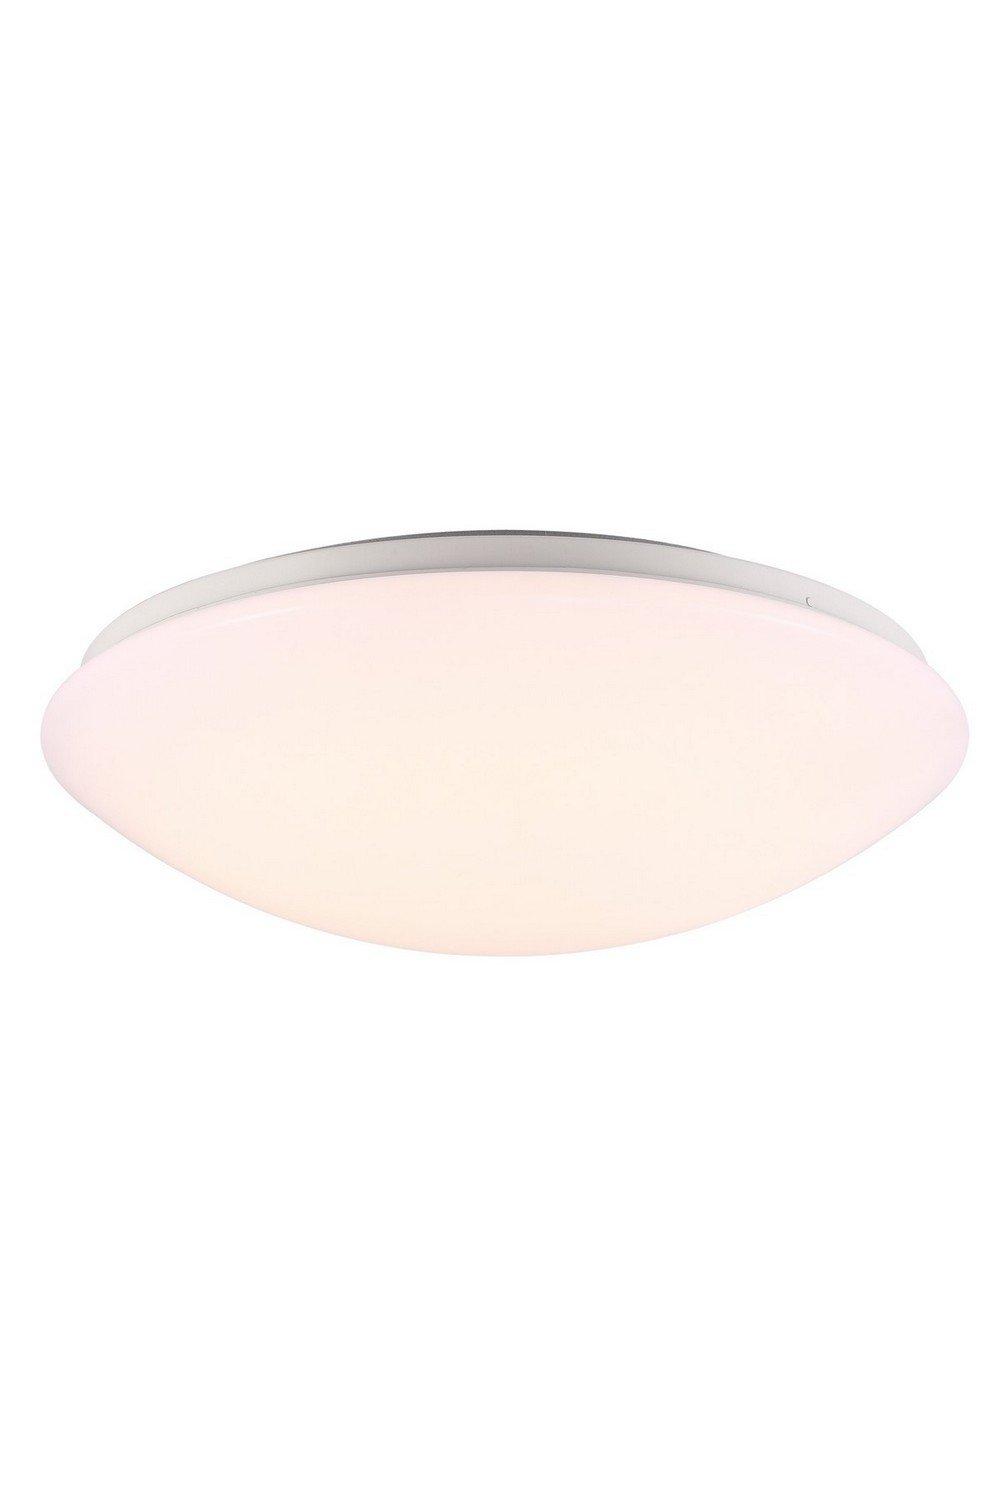 Ask 36cm LED Flush Ceiling Light White 3000K